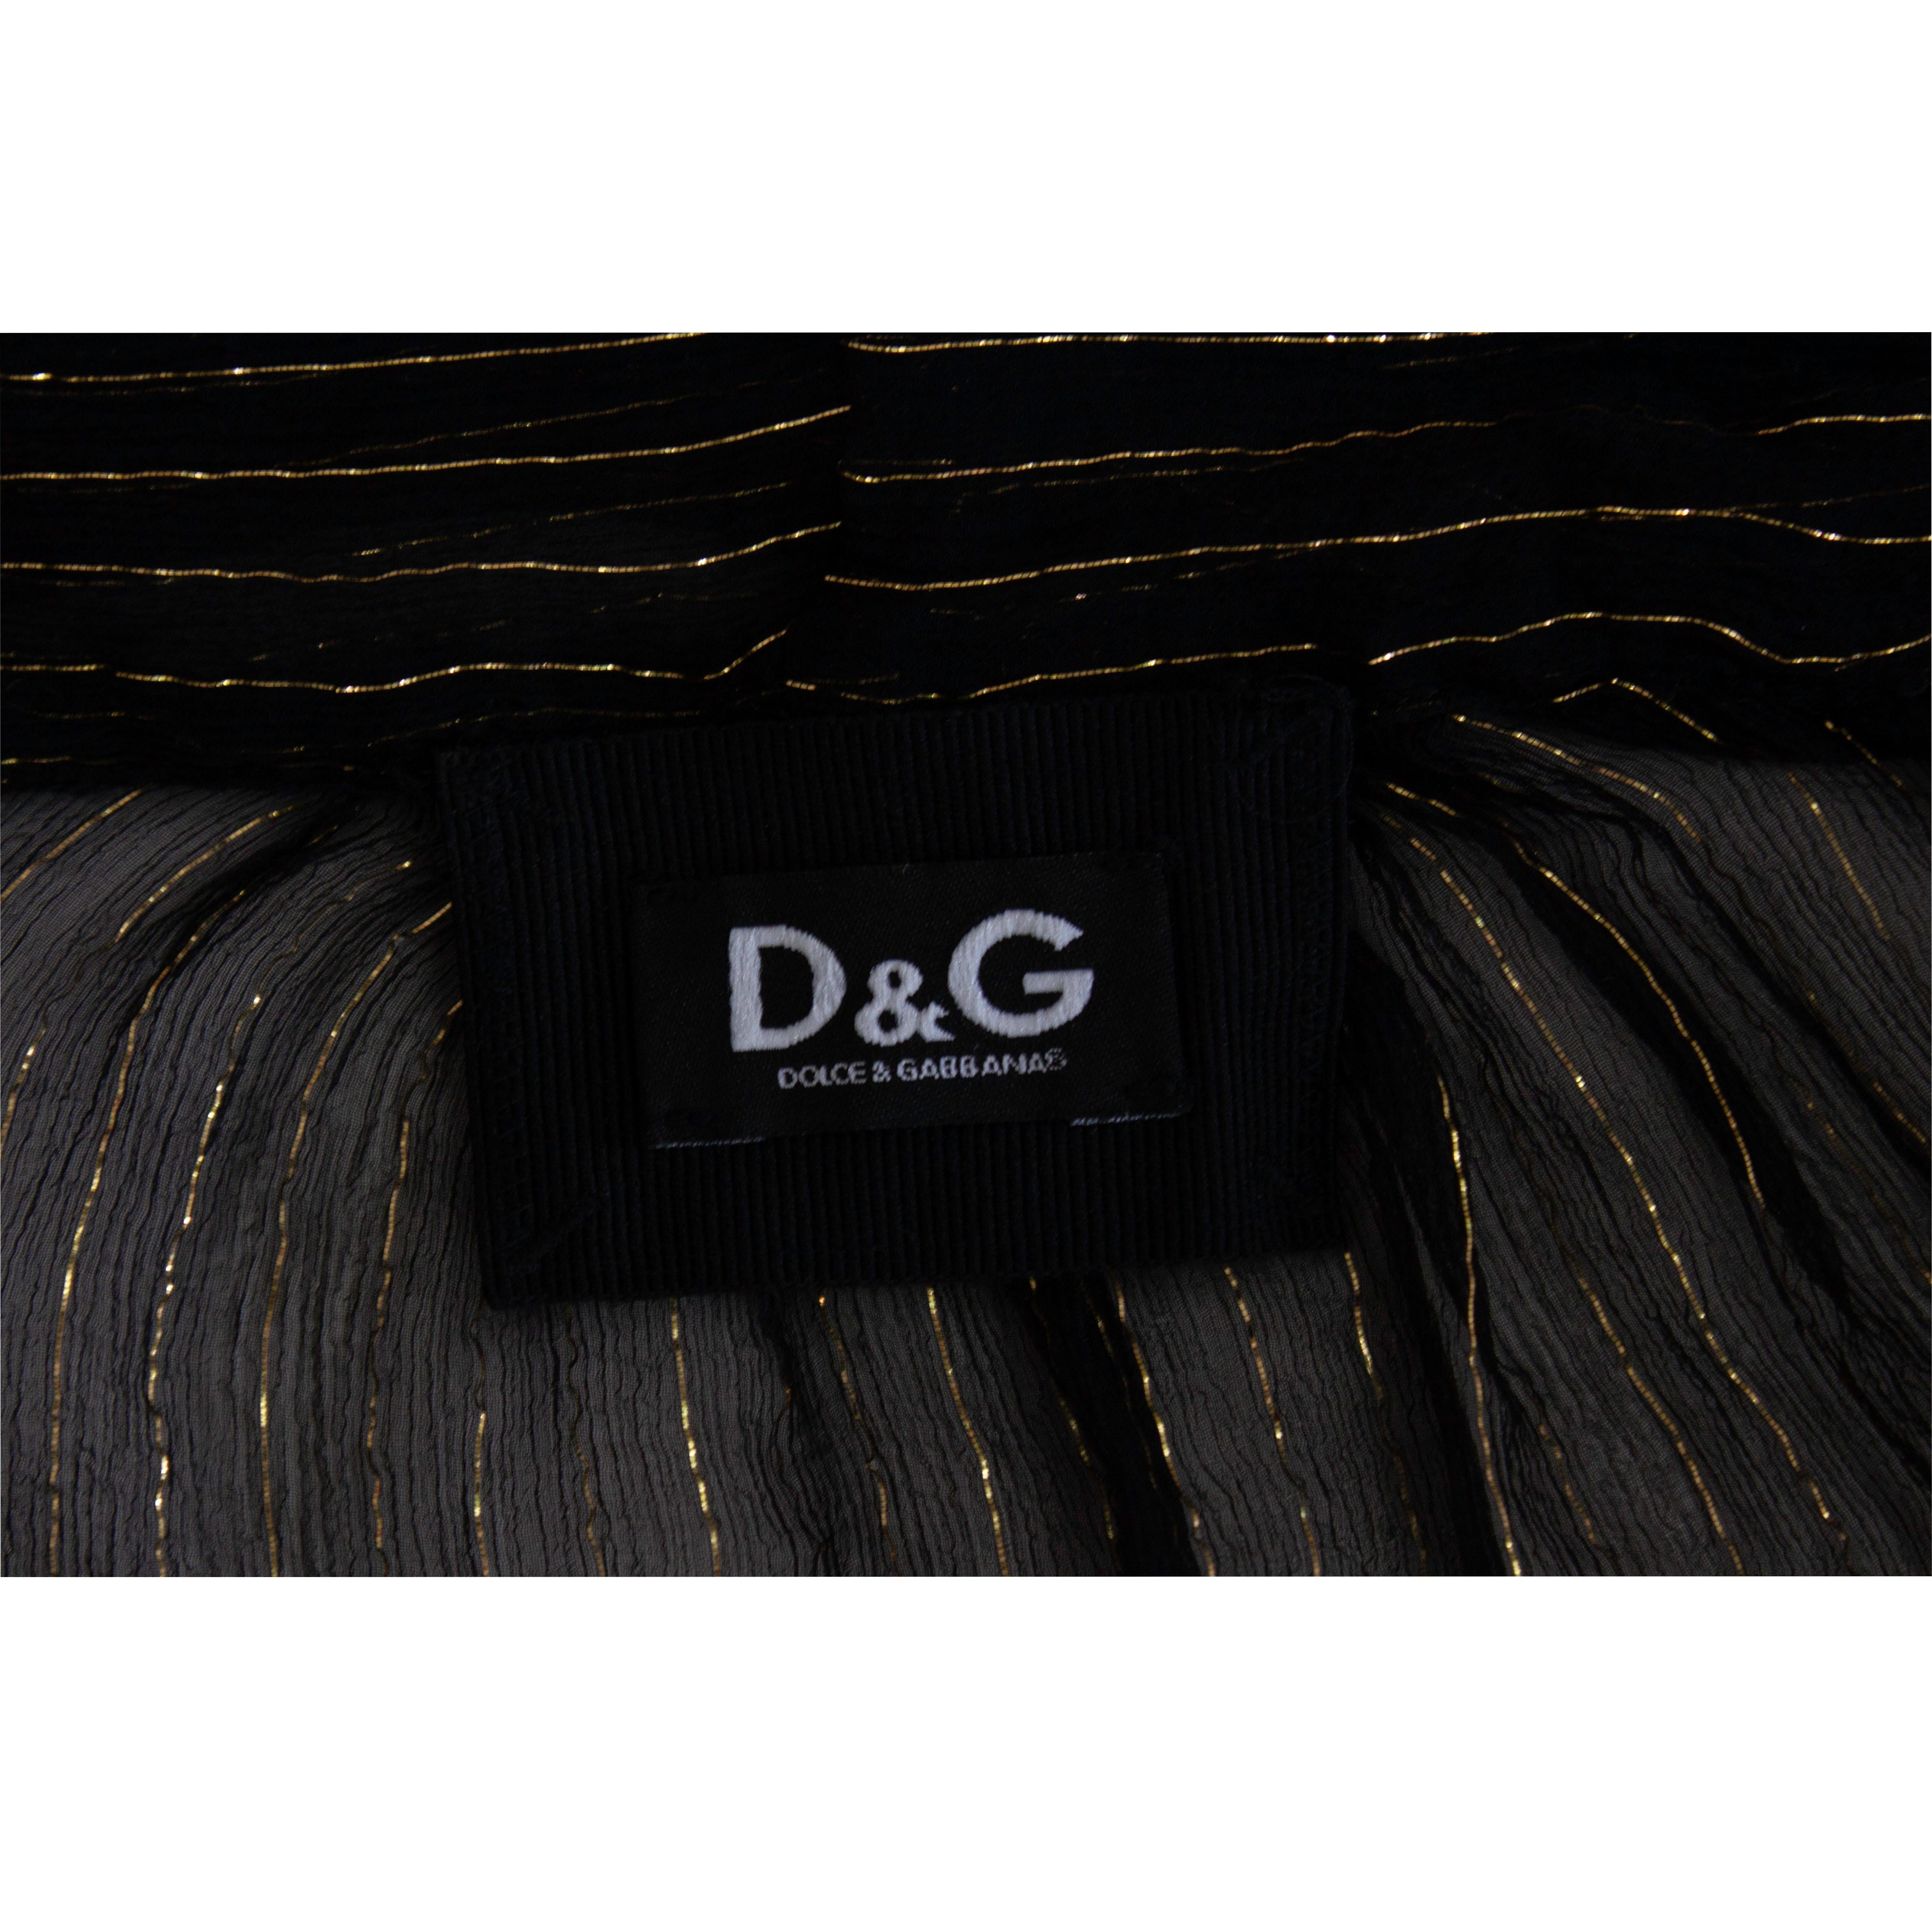 Dolce & Gabbana black and gold pinstripe silk necktie blouse, circa 1990s 5